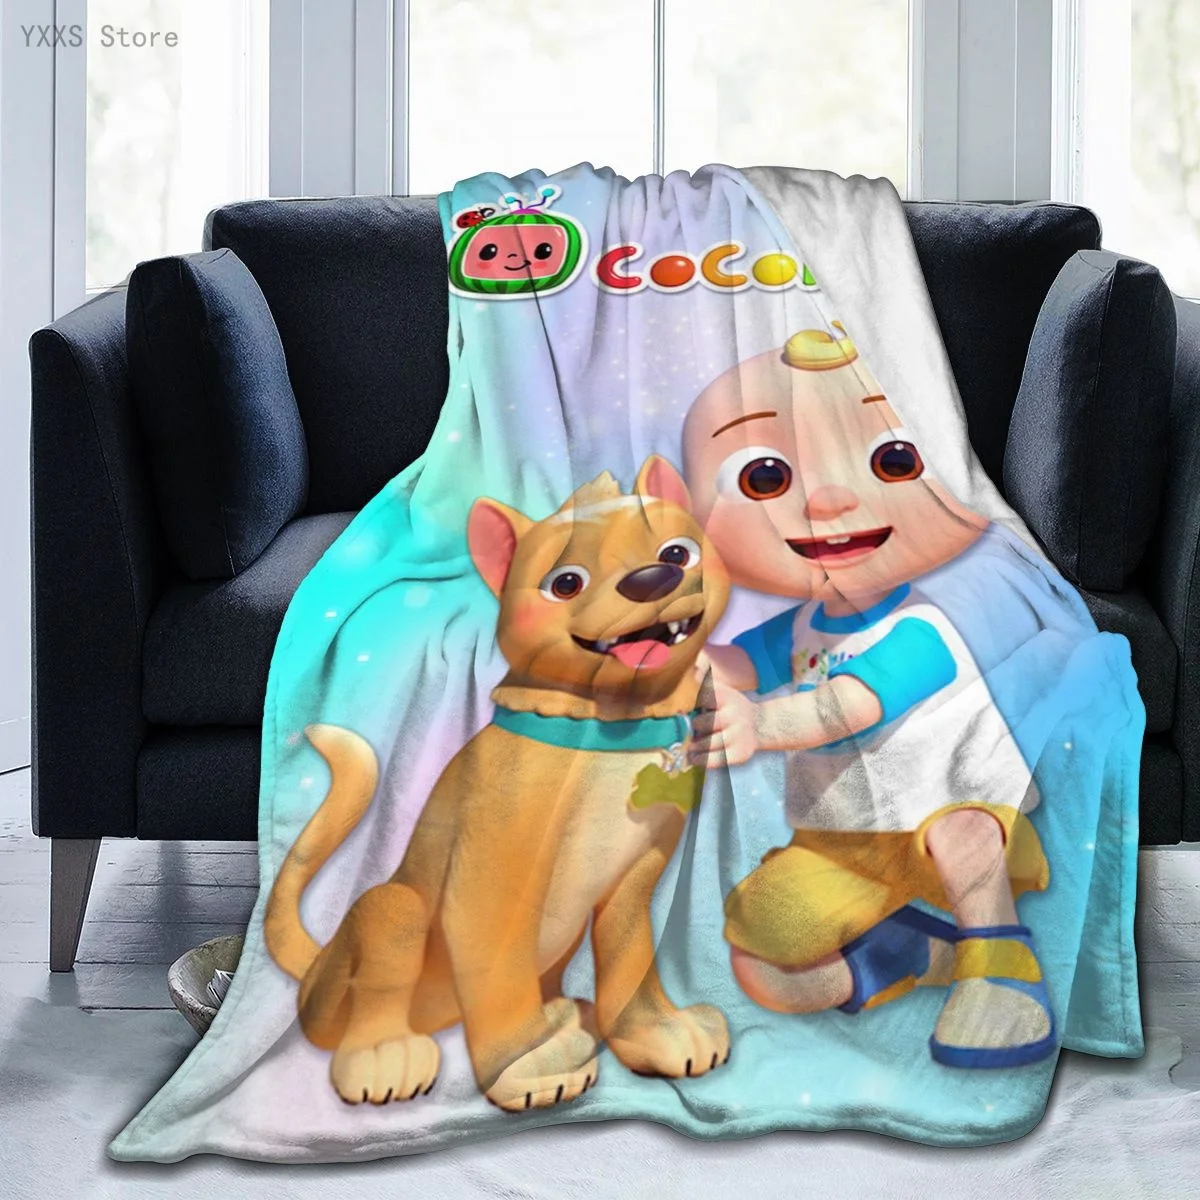 Coco, Melão Crianças Cobertor Super Macia e Quente de Pelúcia Cobertores Bonito Cão e o Bebê Impresso, Crianças Mantas para Sofá Ou na Cama